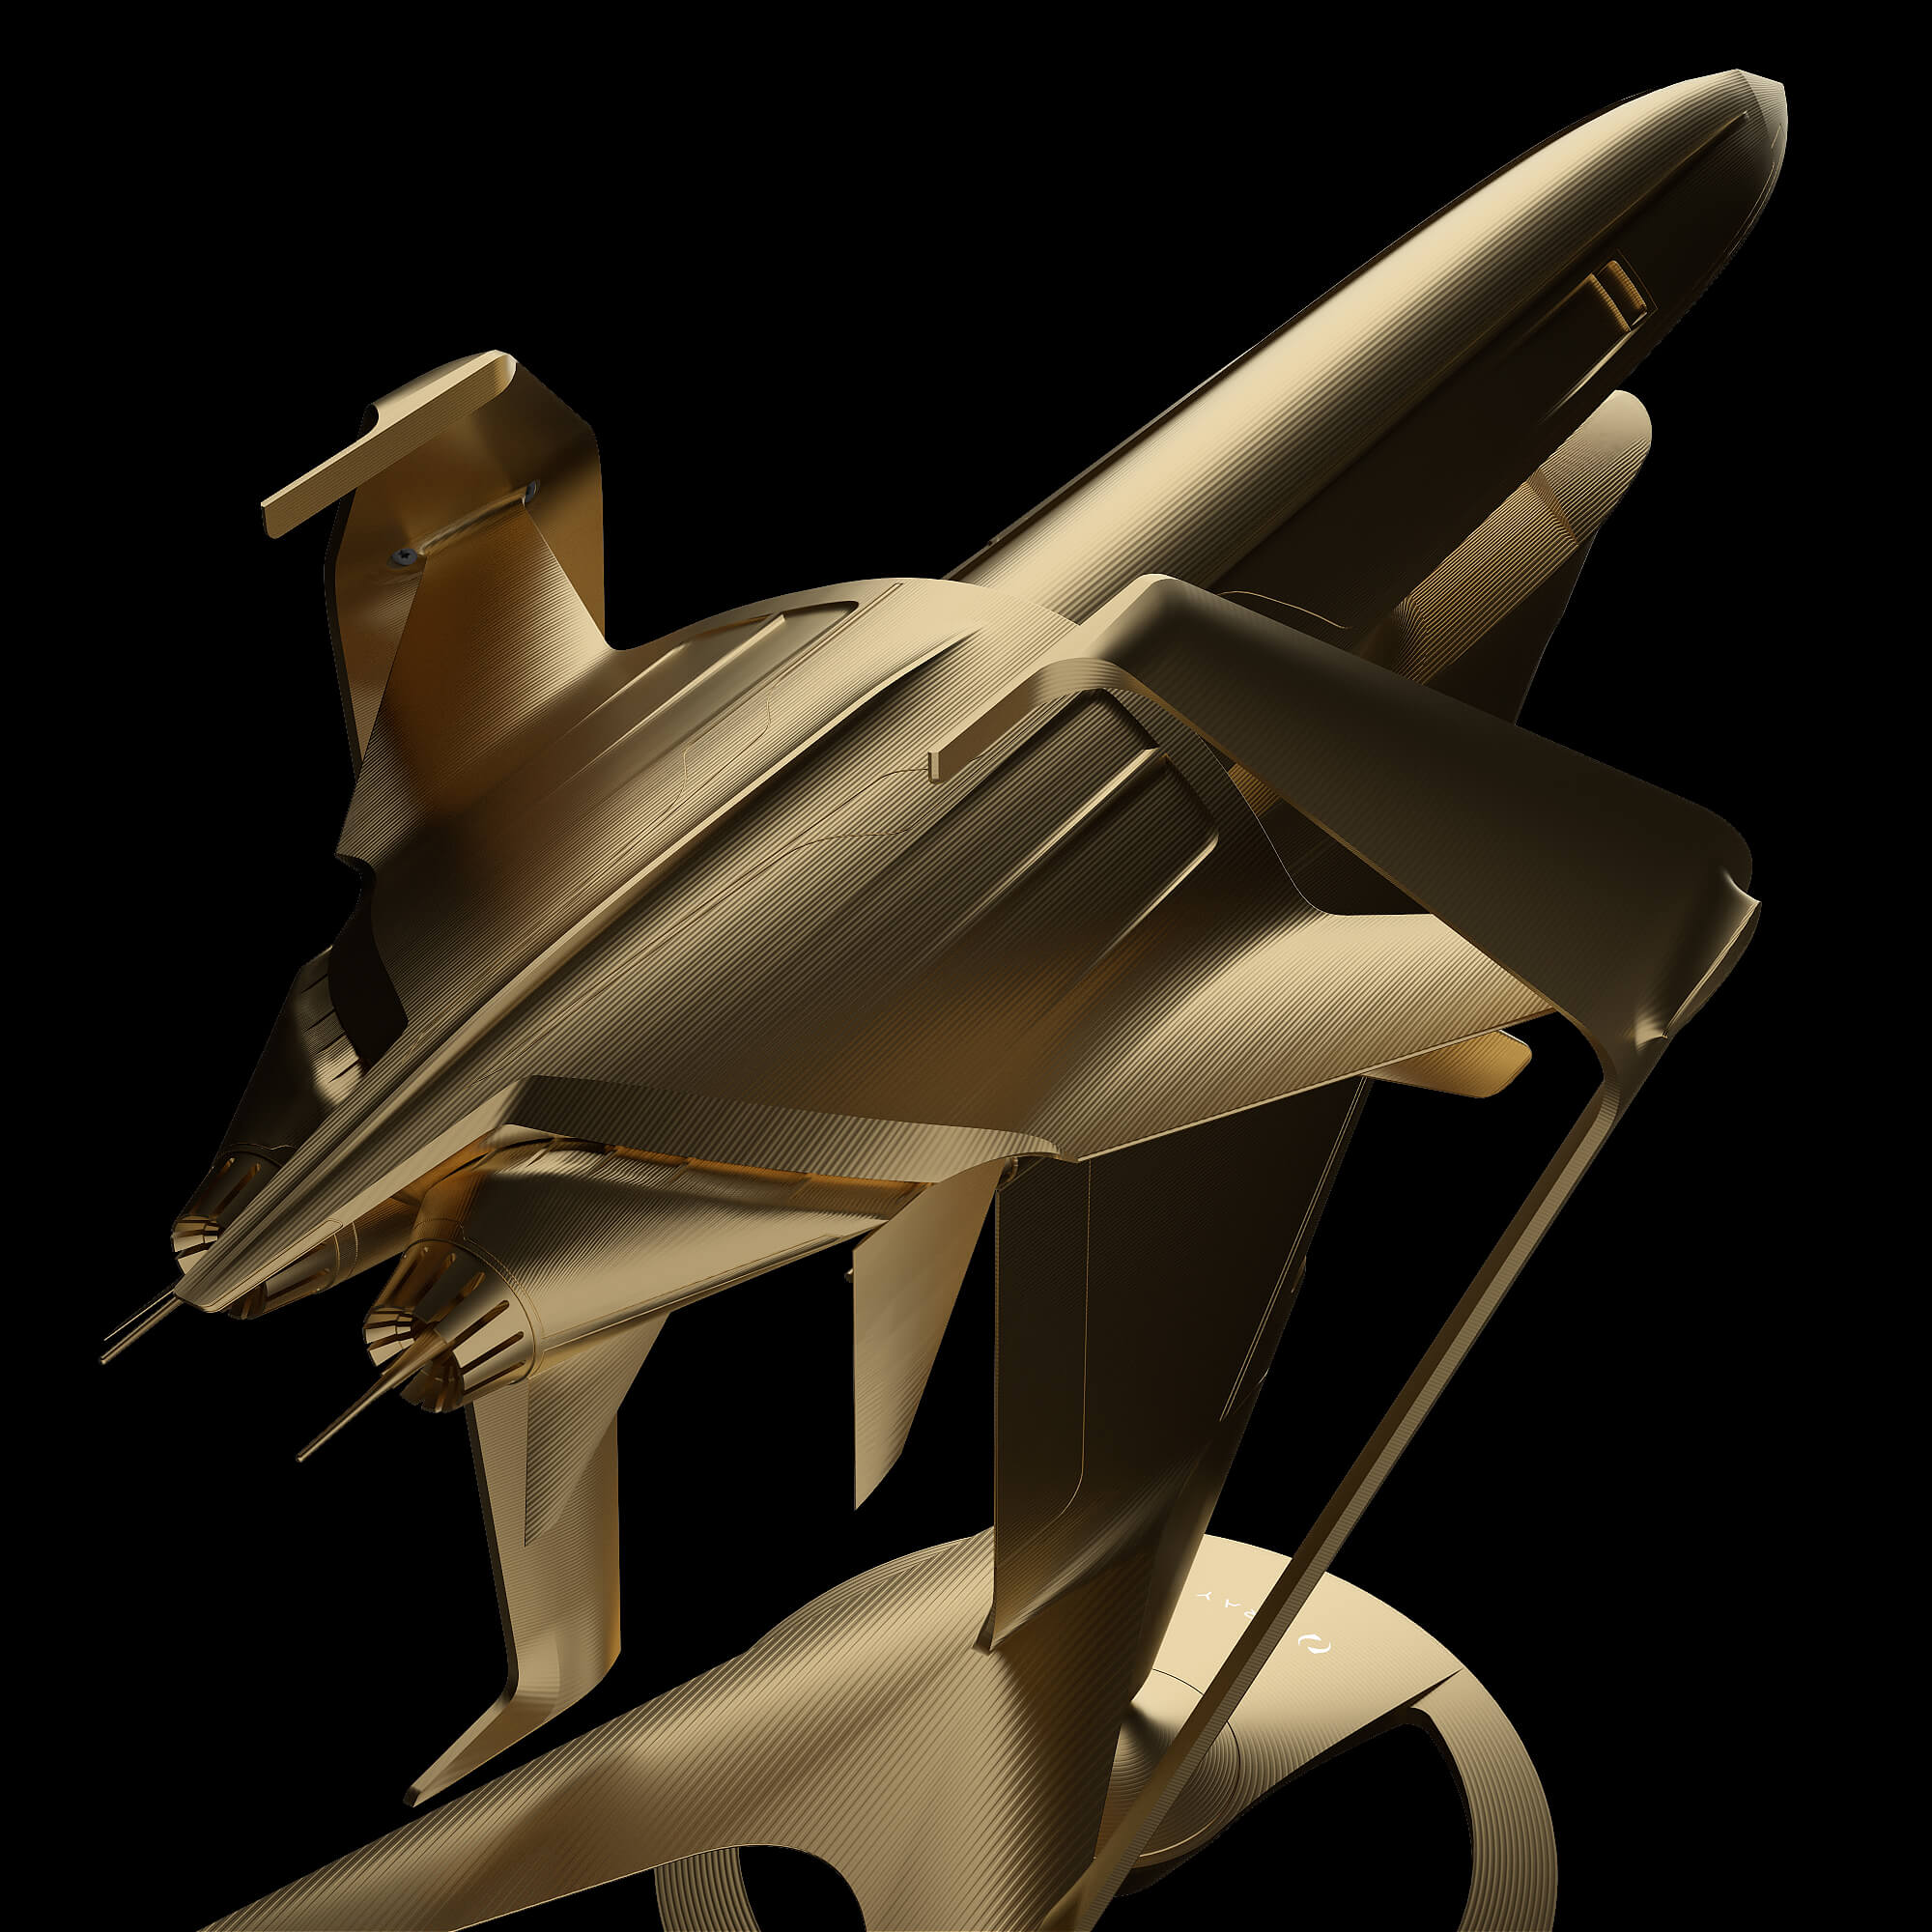 graycraft1-3 gold aluminium spaceship sculpture